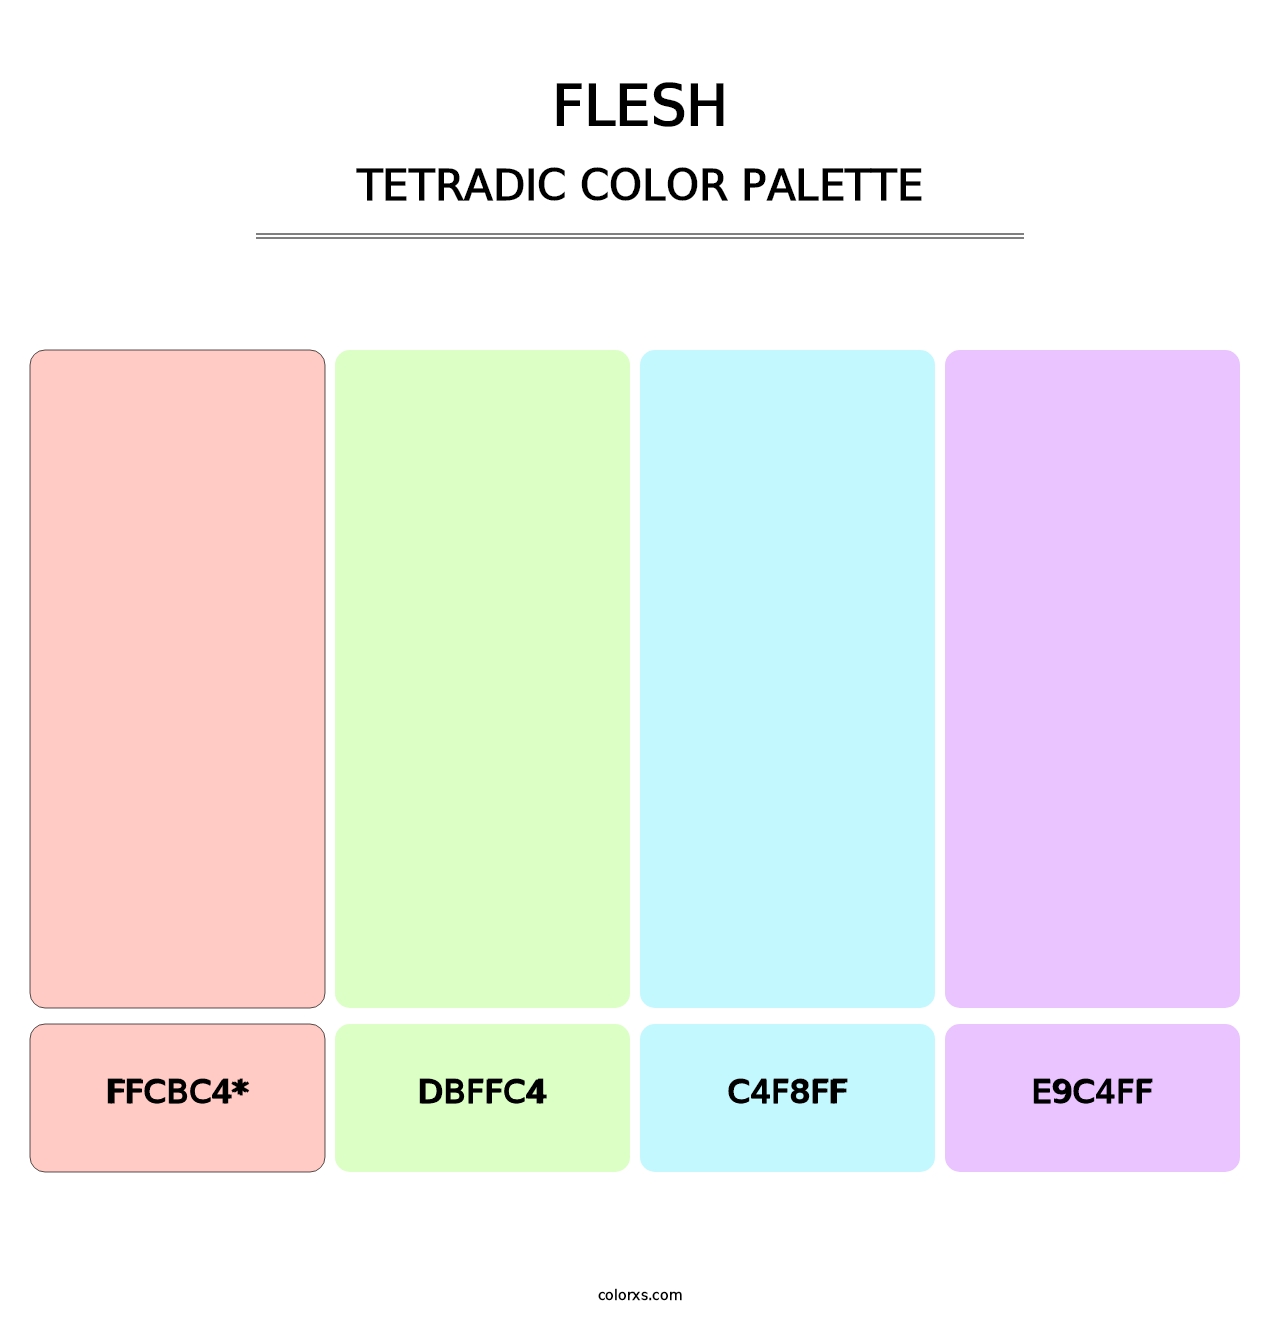 Flesh - Tetradic Color Palette